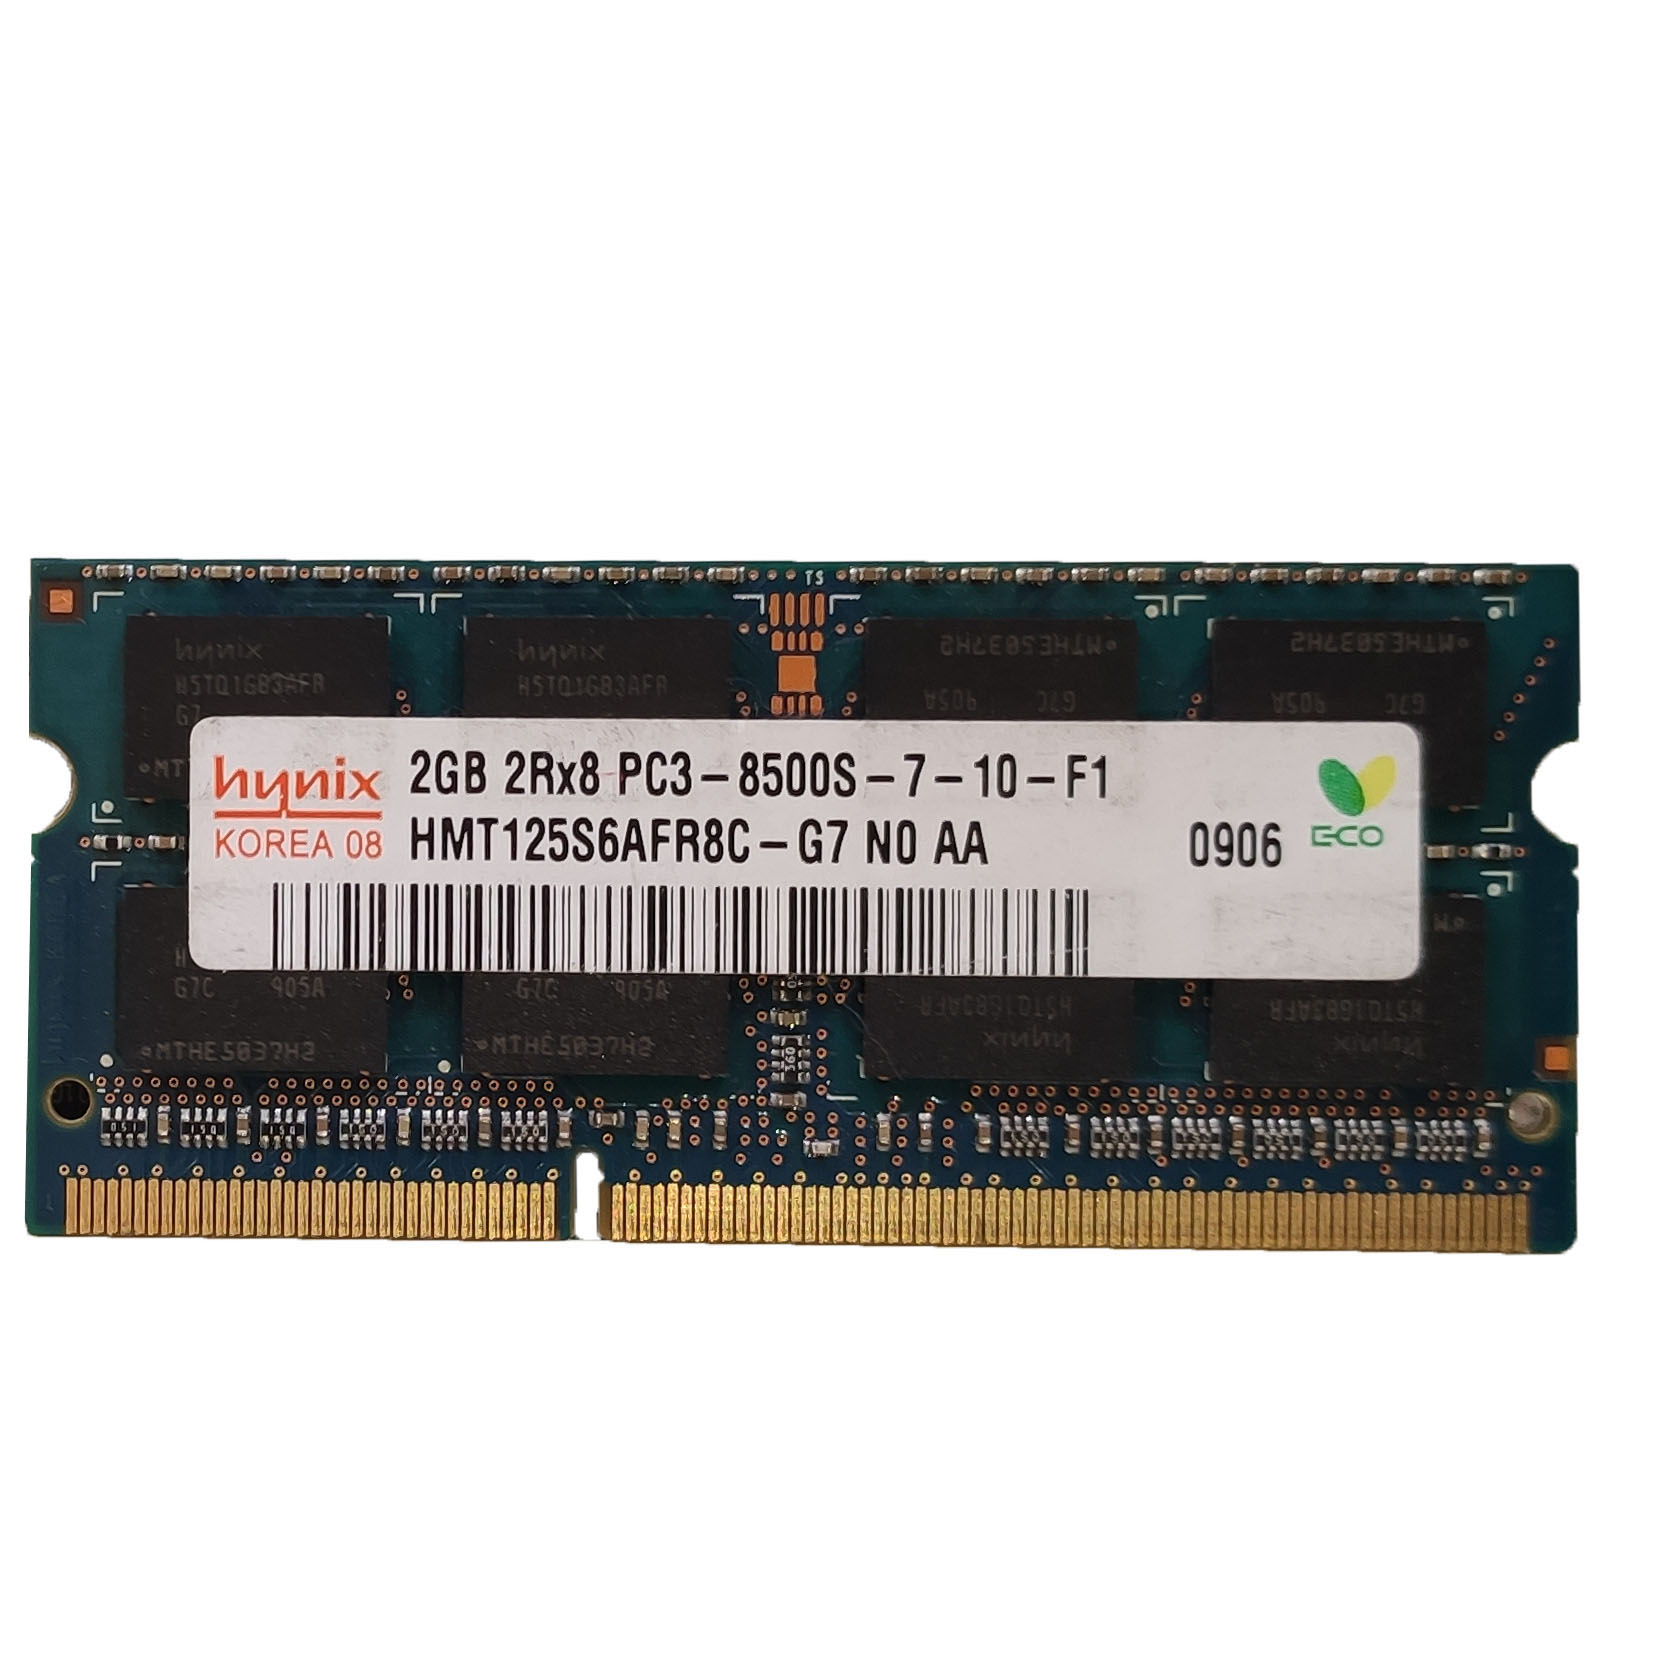 رم لپ تاپ DDR3 تک کاناله 1066 مگاهرتز CL8 هاینیکس مدل 8500s ظرفیت 2 گیگابایت